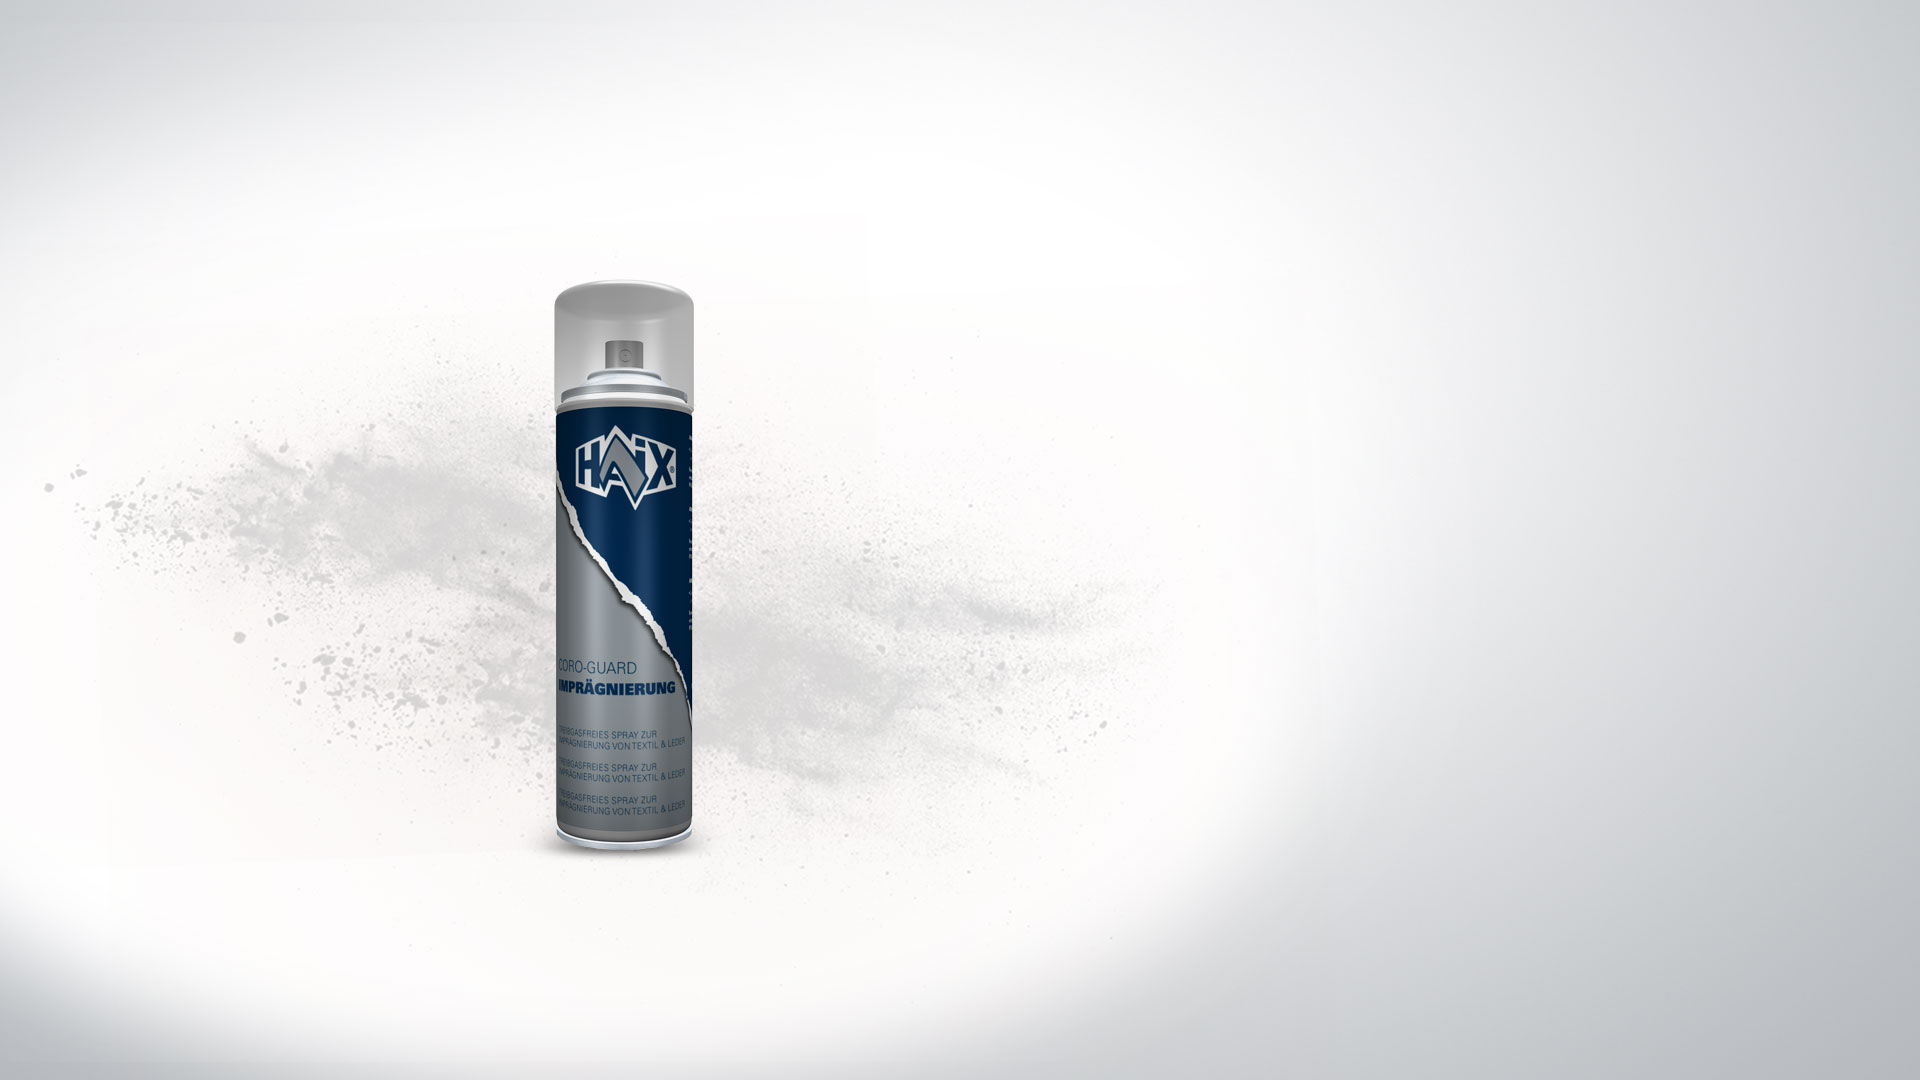 HAIX Spray imperméabilisant, Une protection optimale de vos bottes